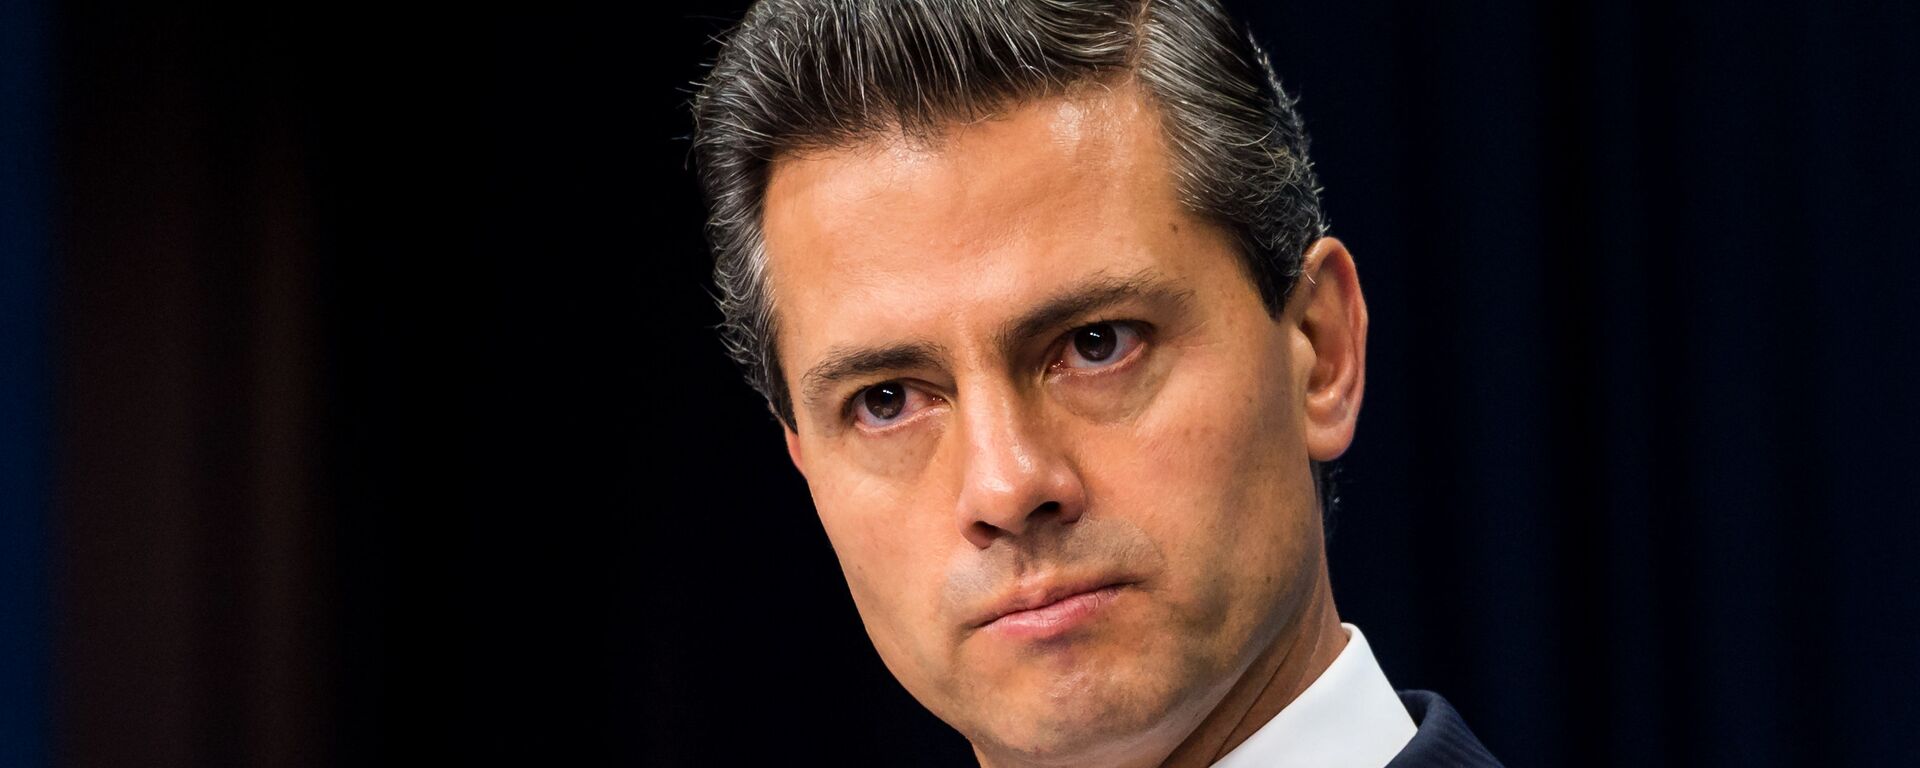 Enrique Peña Nieto, expresidente de México - Sputnik Mundo, 1920, 16.07.2020